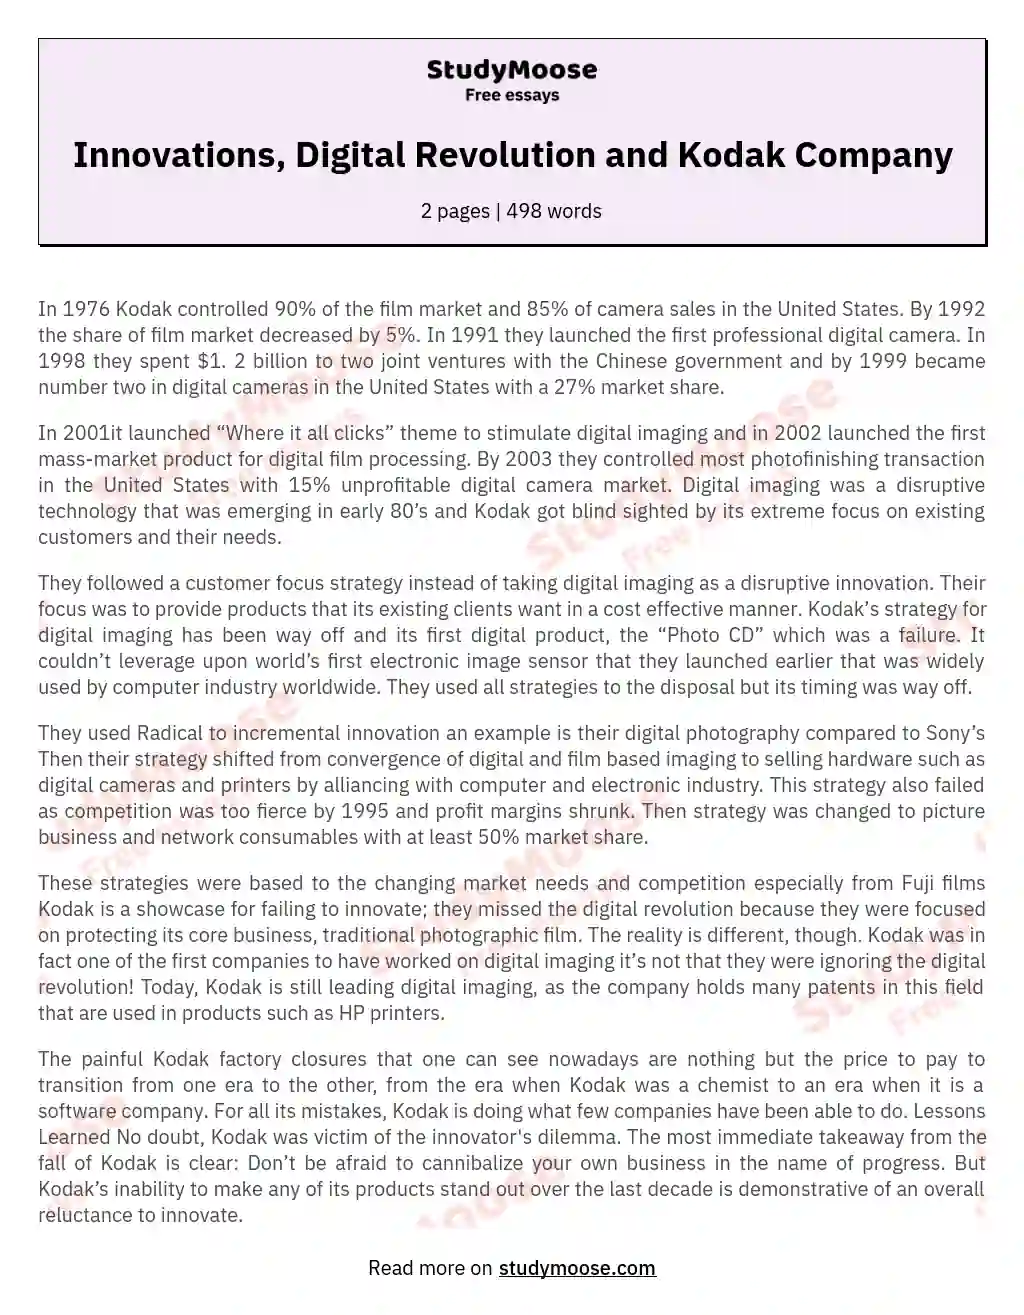 Innovations, Digital Revolution and Kodak Company essay